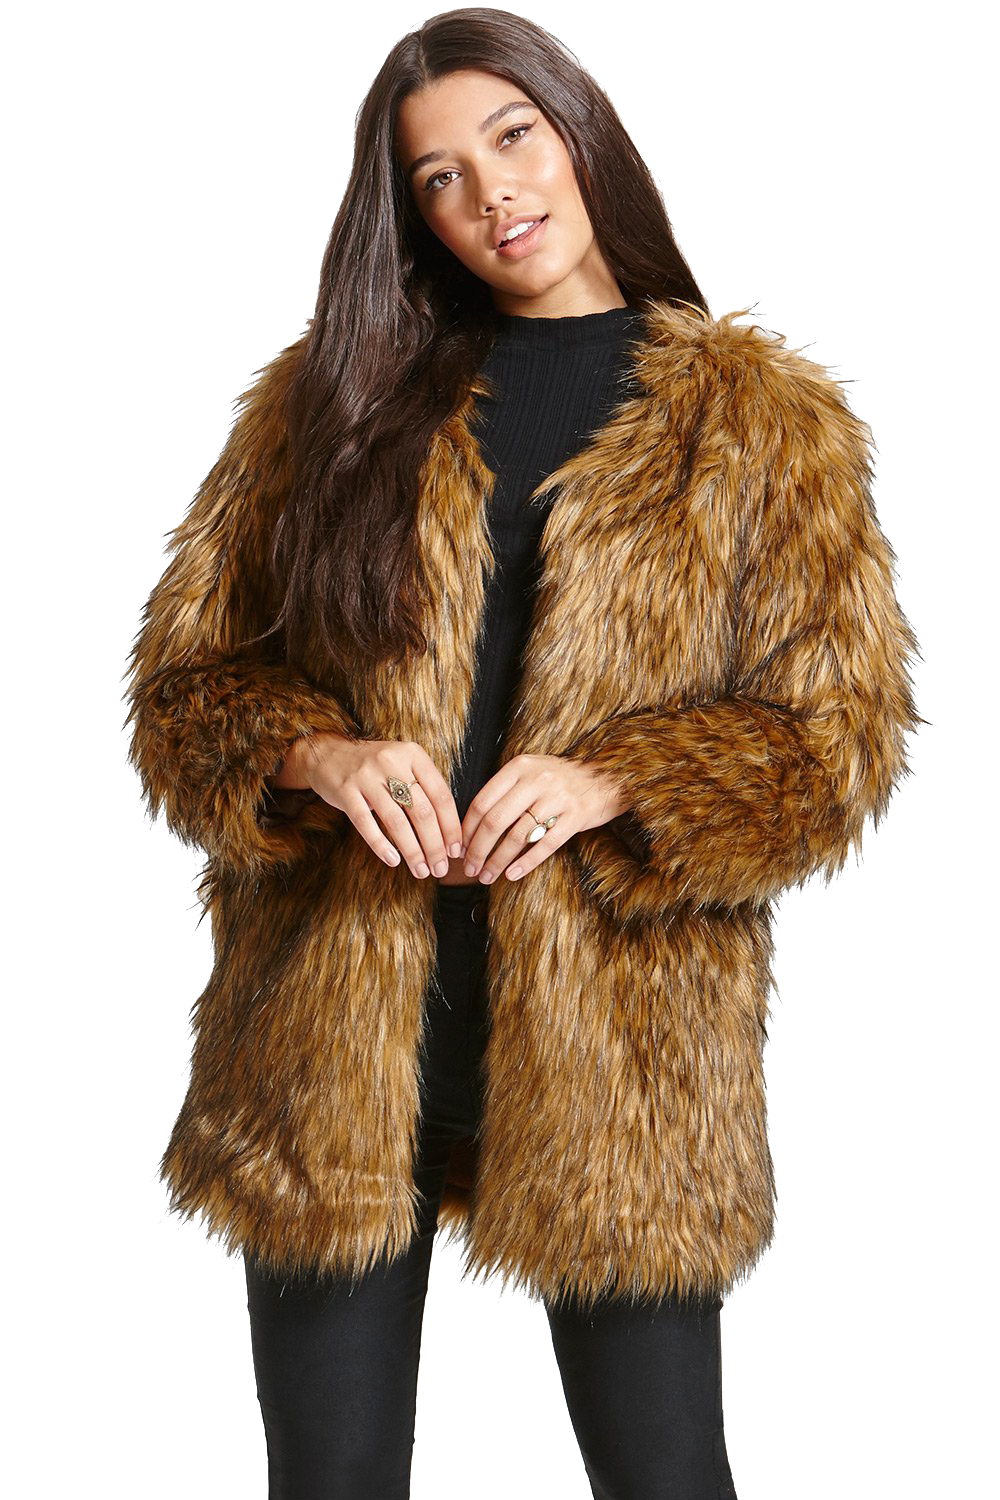 Fur Coat PNG Background Image